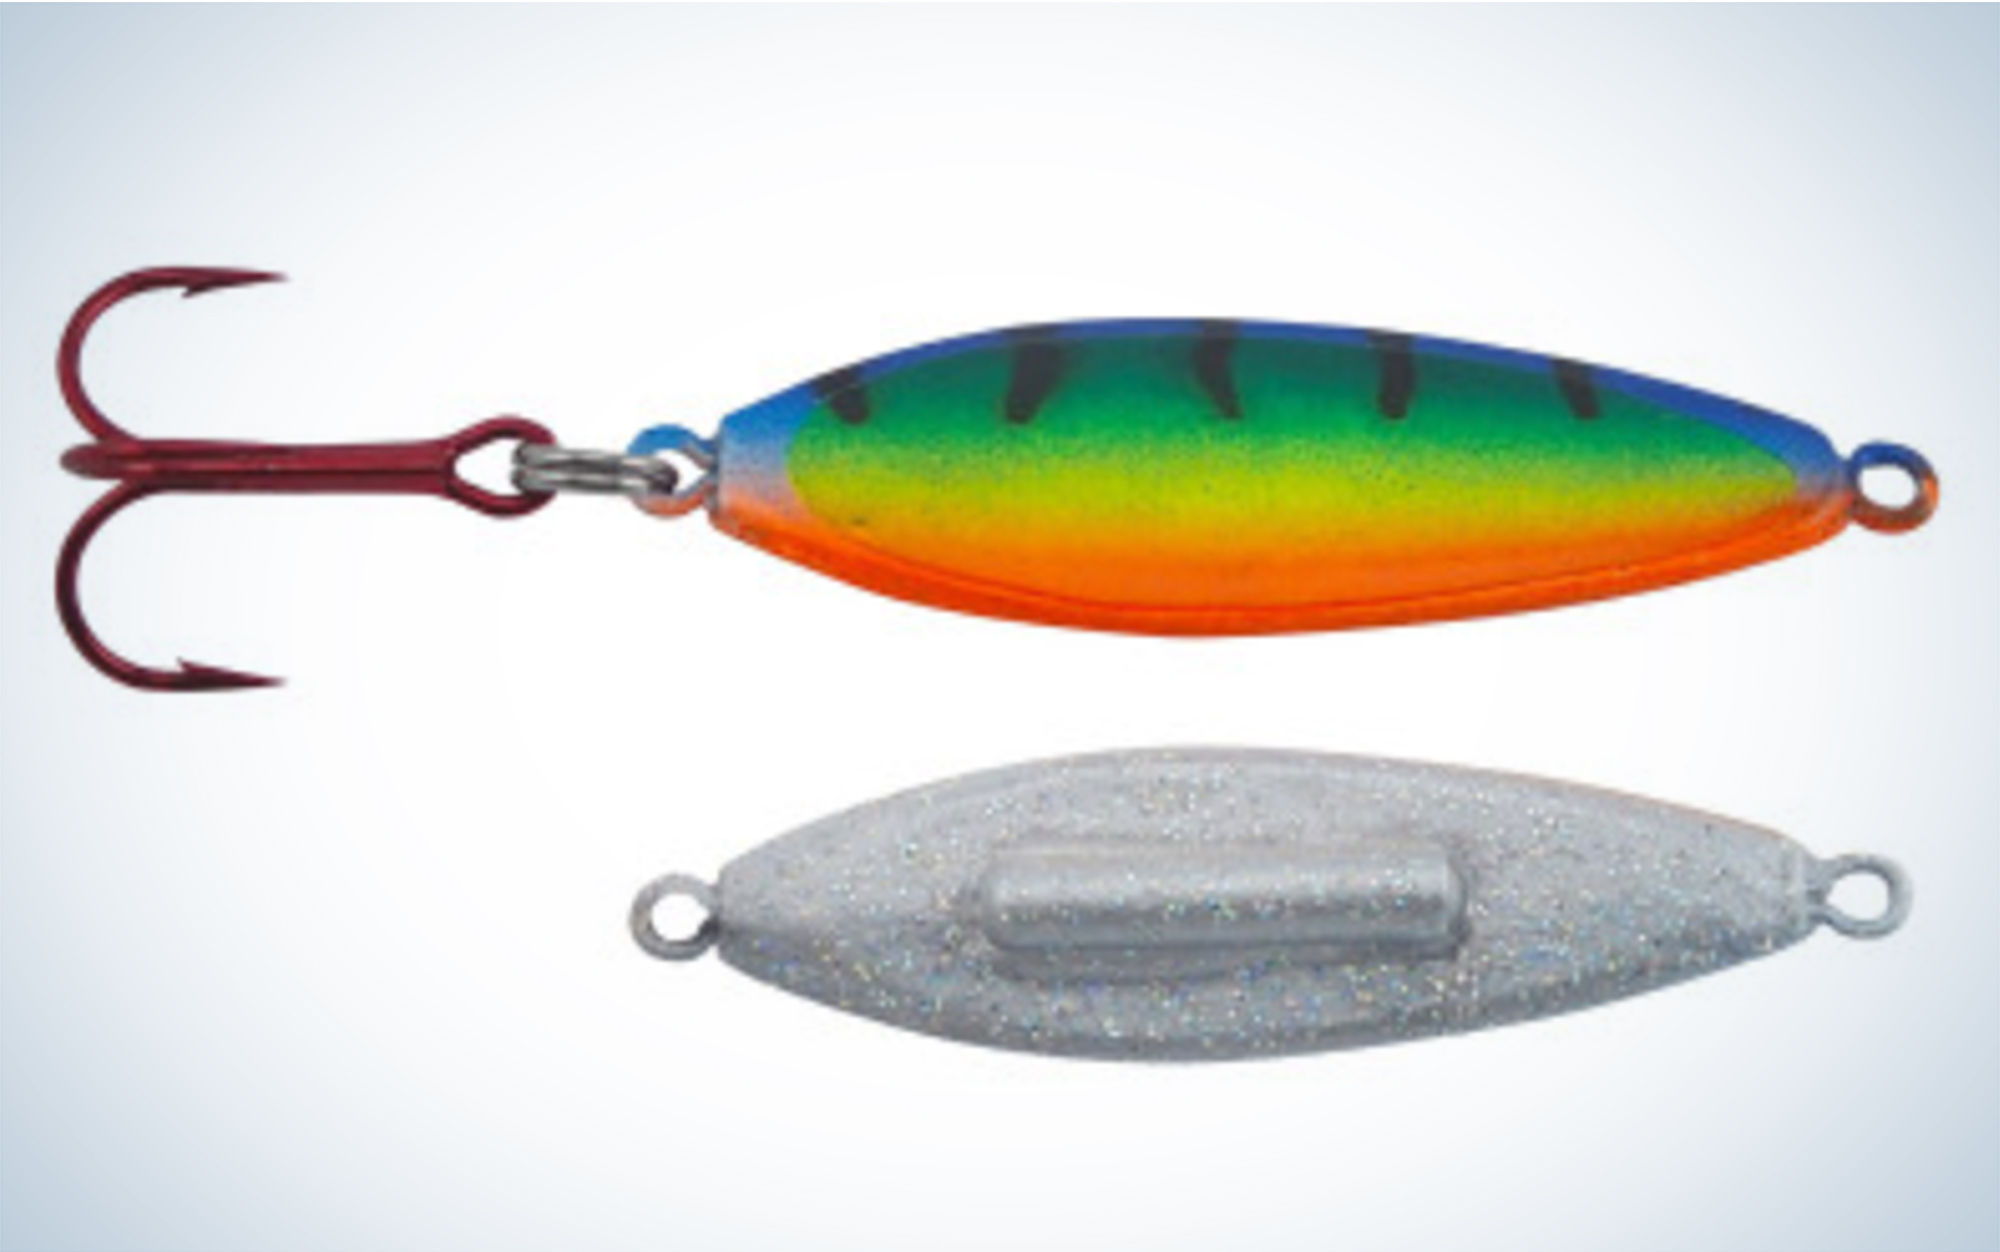 The Silver Streak Rattle Streak Spoon is one of the best walleye ice fishing lures.